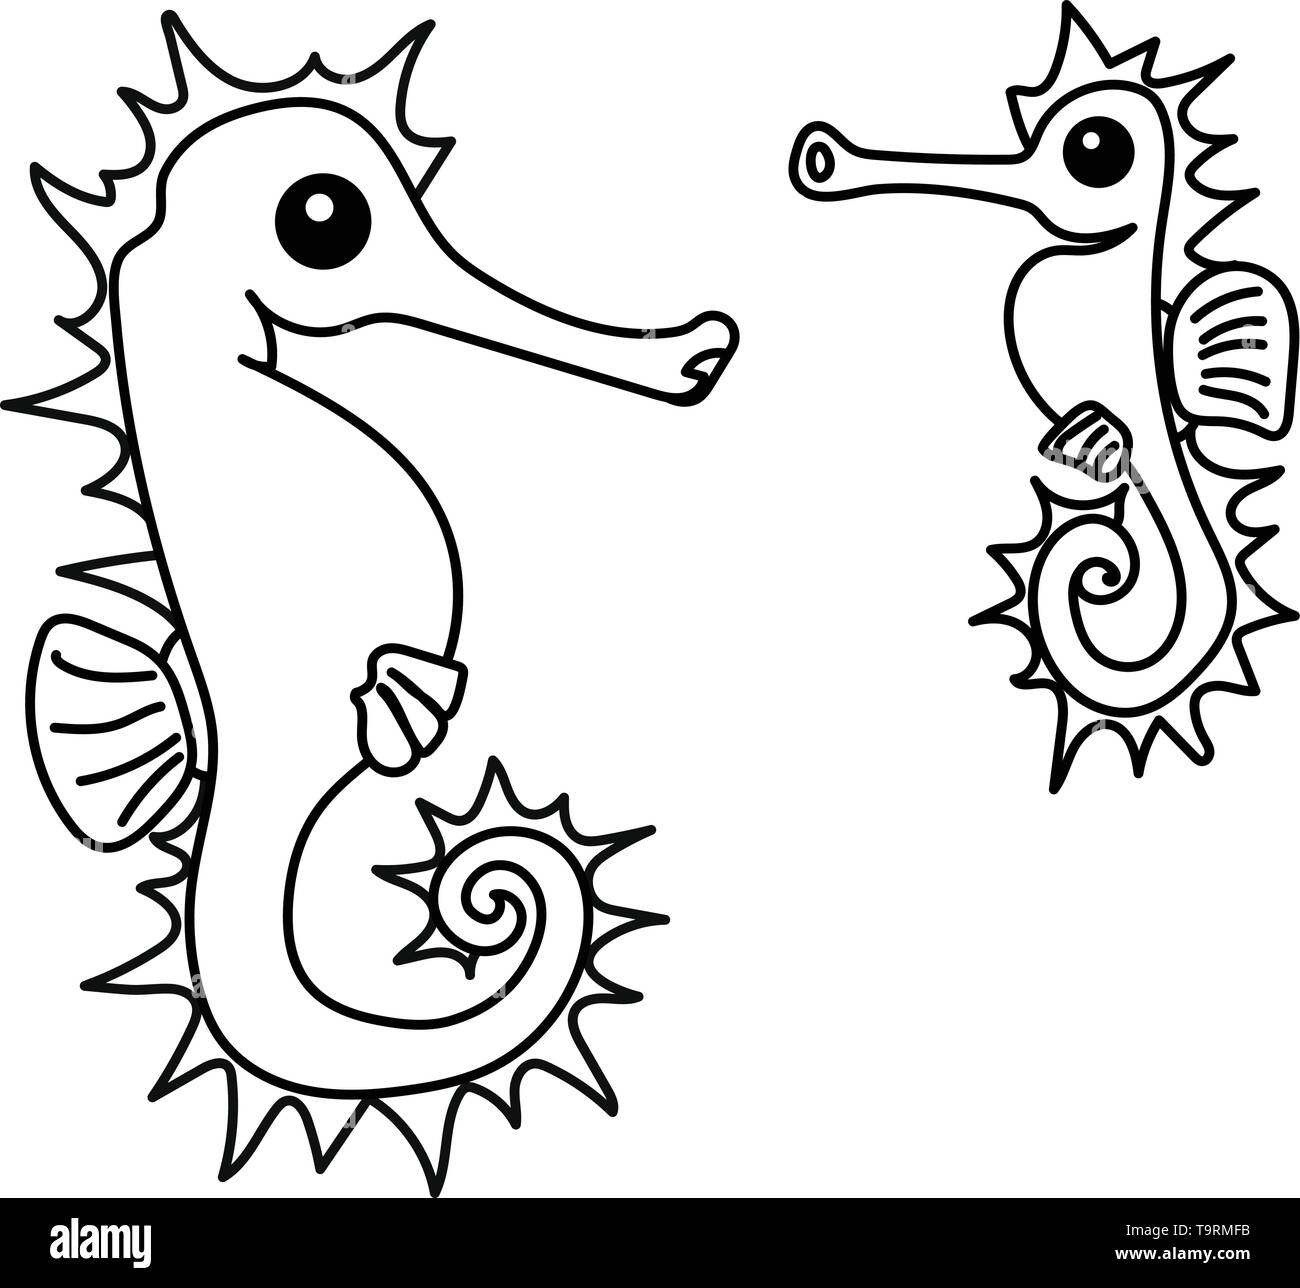 Linea del vettore animale cartoon clip art cavalluccio marino giallo Illustrazione Vettoriale